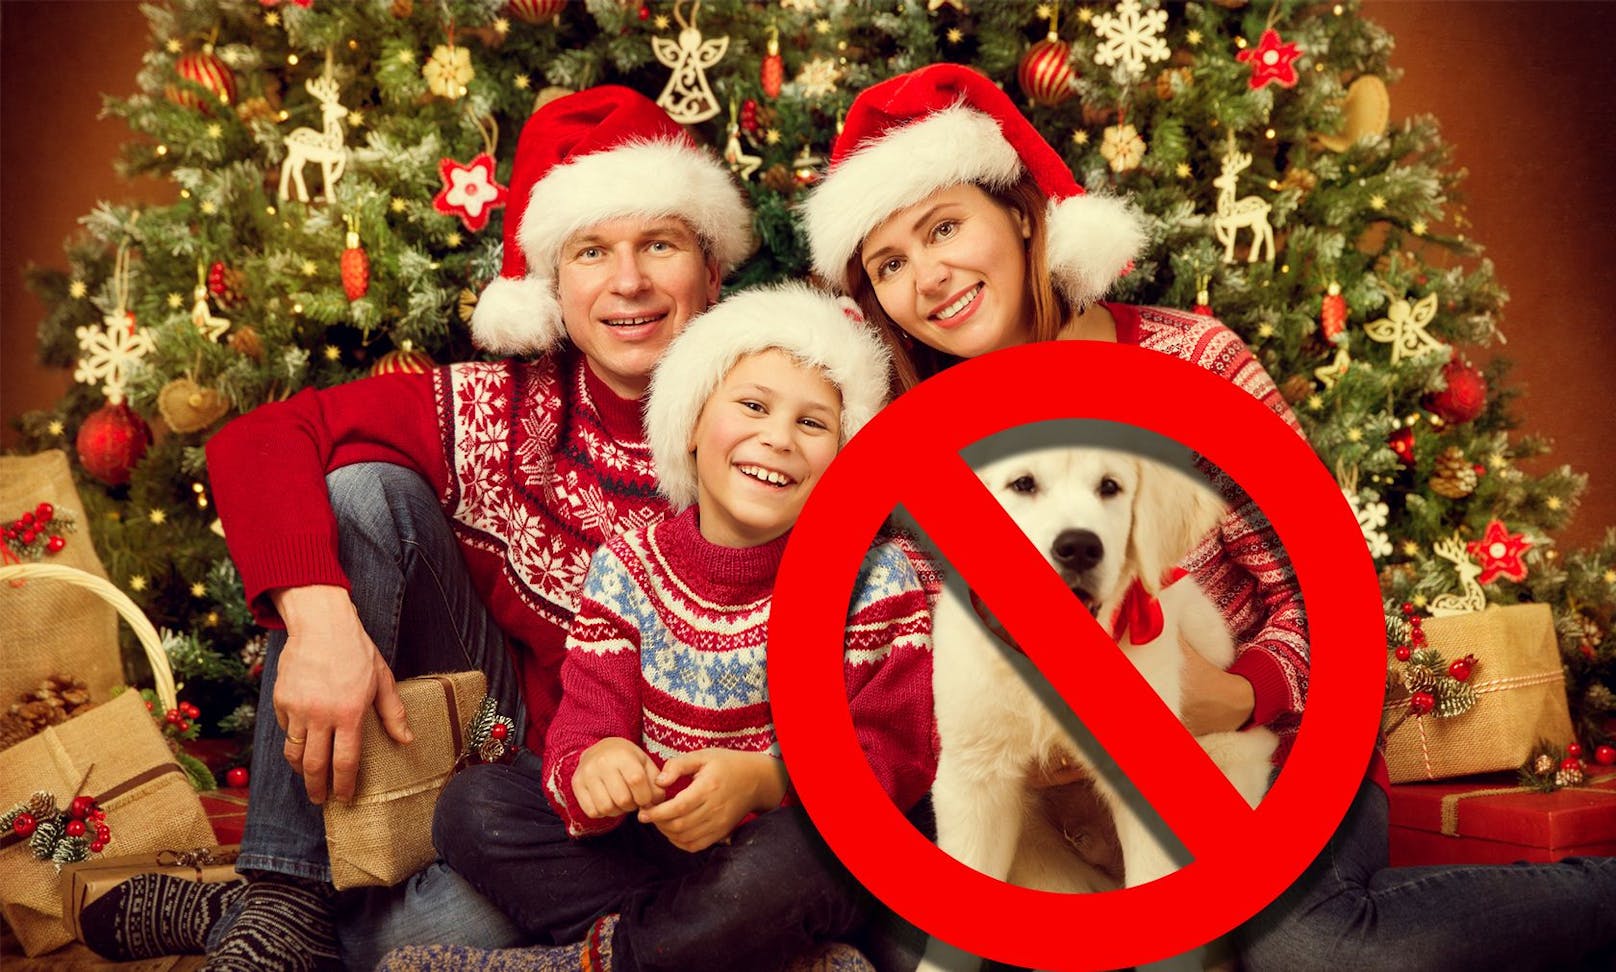 Haustiere haben unter dem Christbaum nichts verloren. Tierschützer warnen vor Impulskäufen zu Weihnachten.